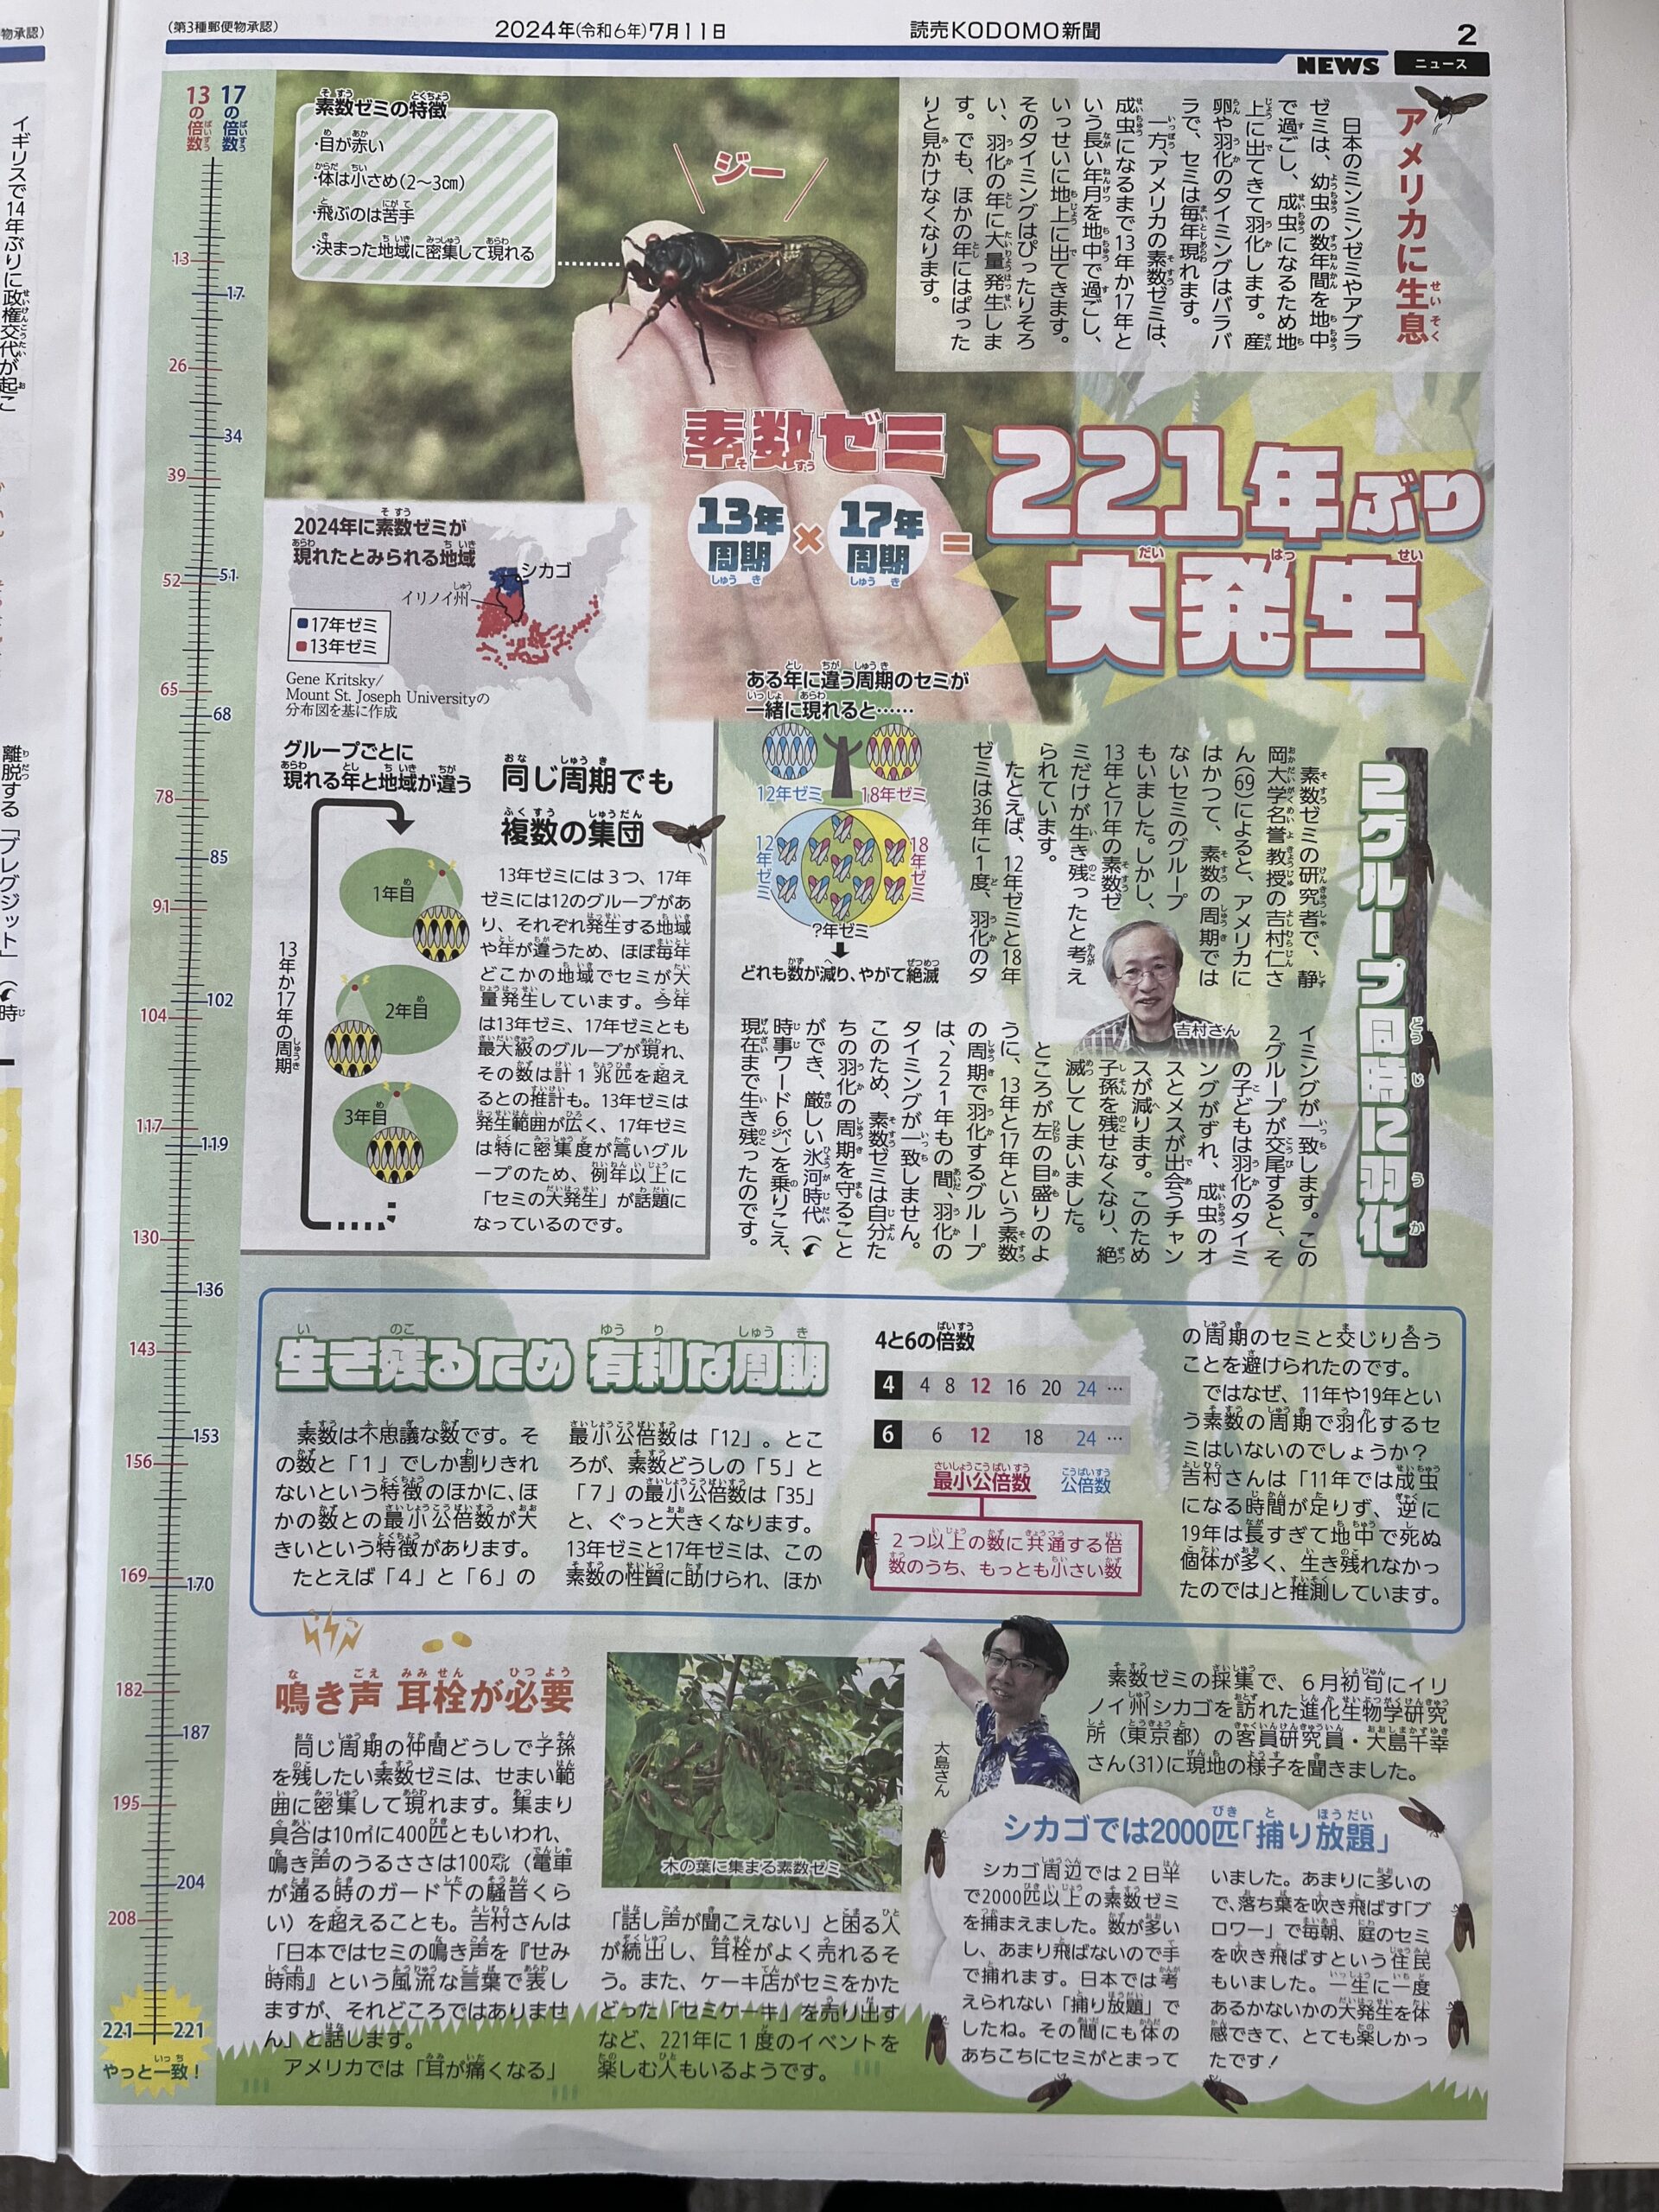 読売KODOMO新聞からpage-visual 読売KODOMO新聞からビジュアル